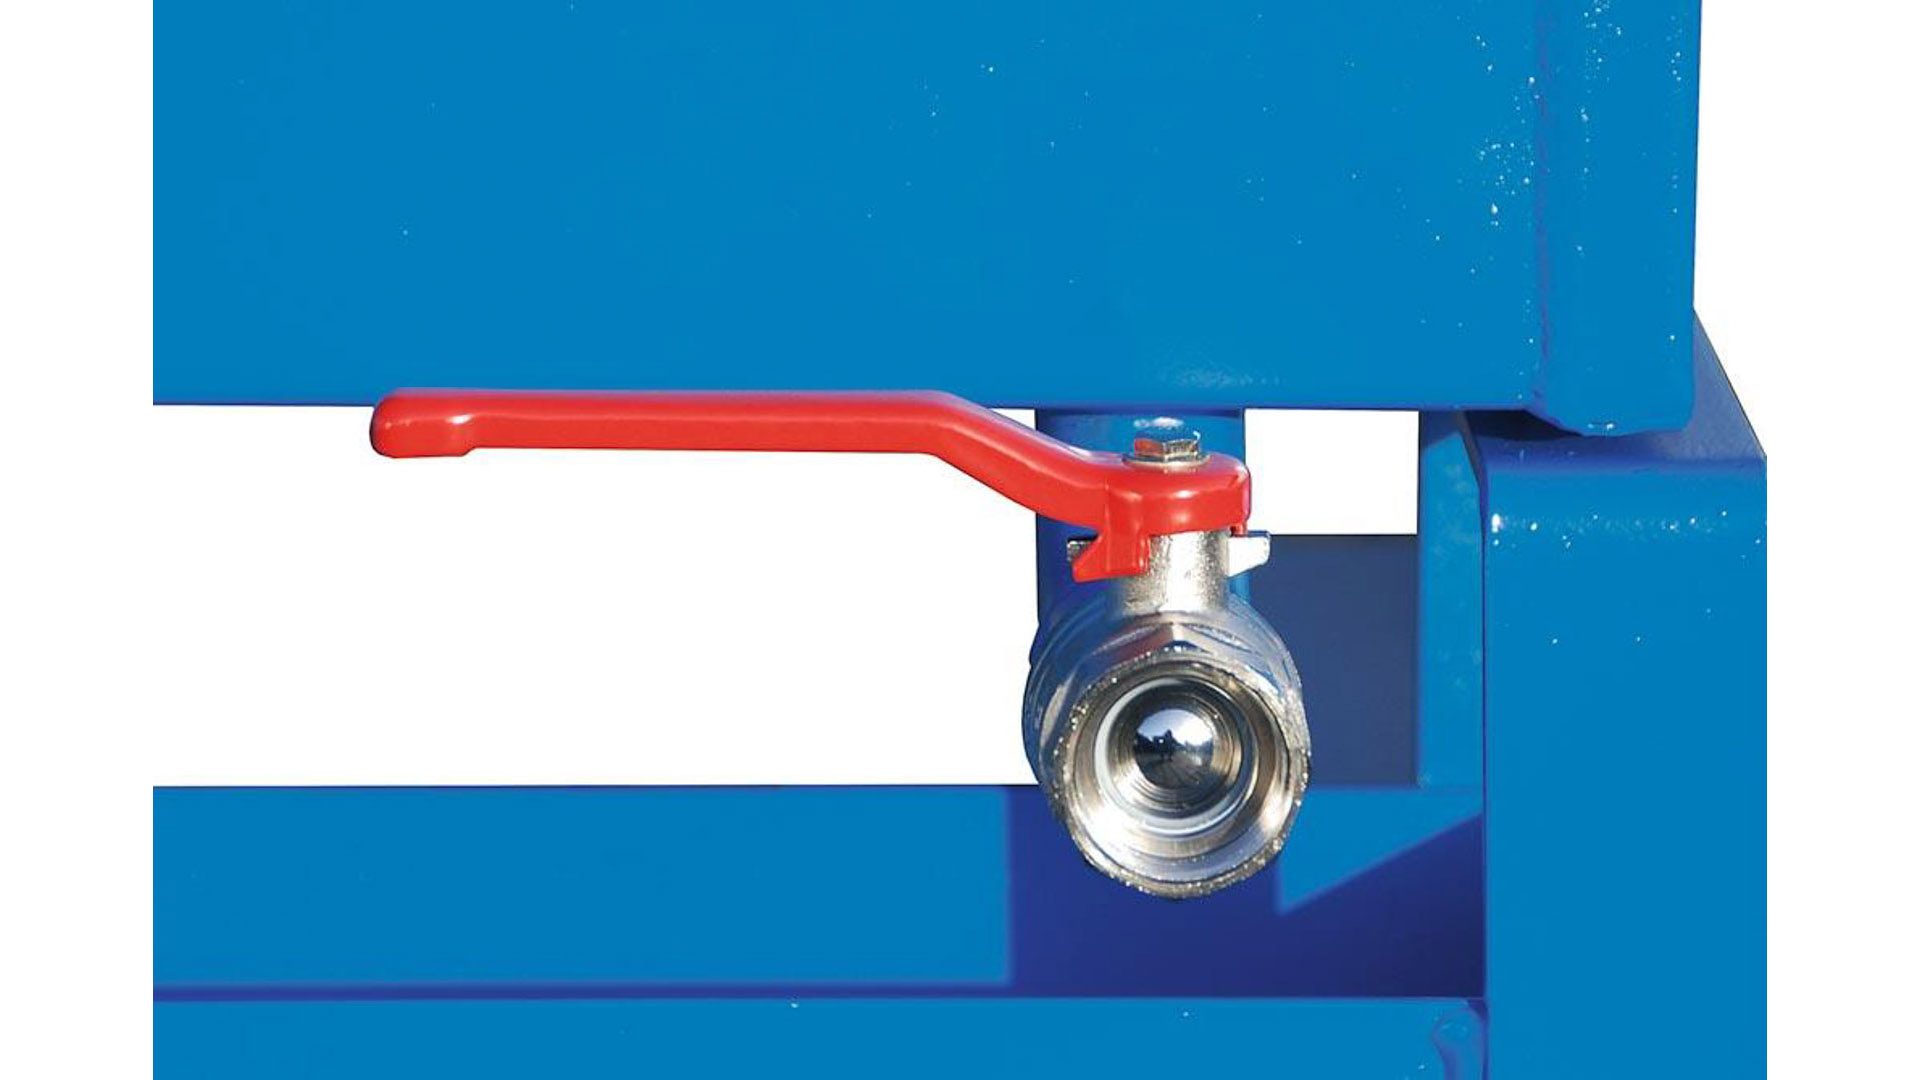 Späne-Selbstkippbehälter mit Abrollsystem, Volumen 0,30 cbm, LxBxH 1260x770x835 mm, lackiert RAL 5012 blau